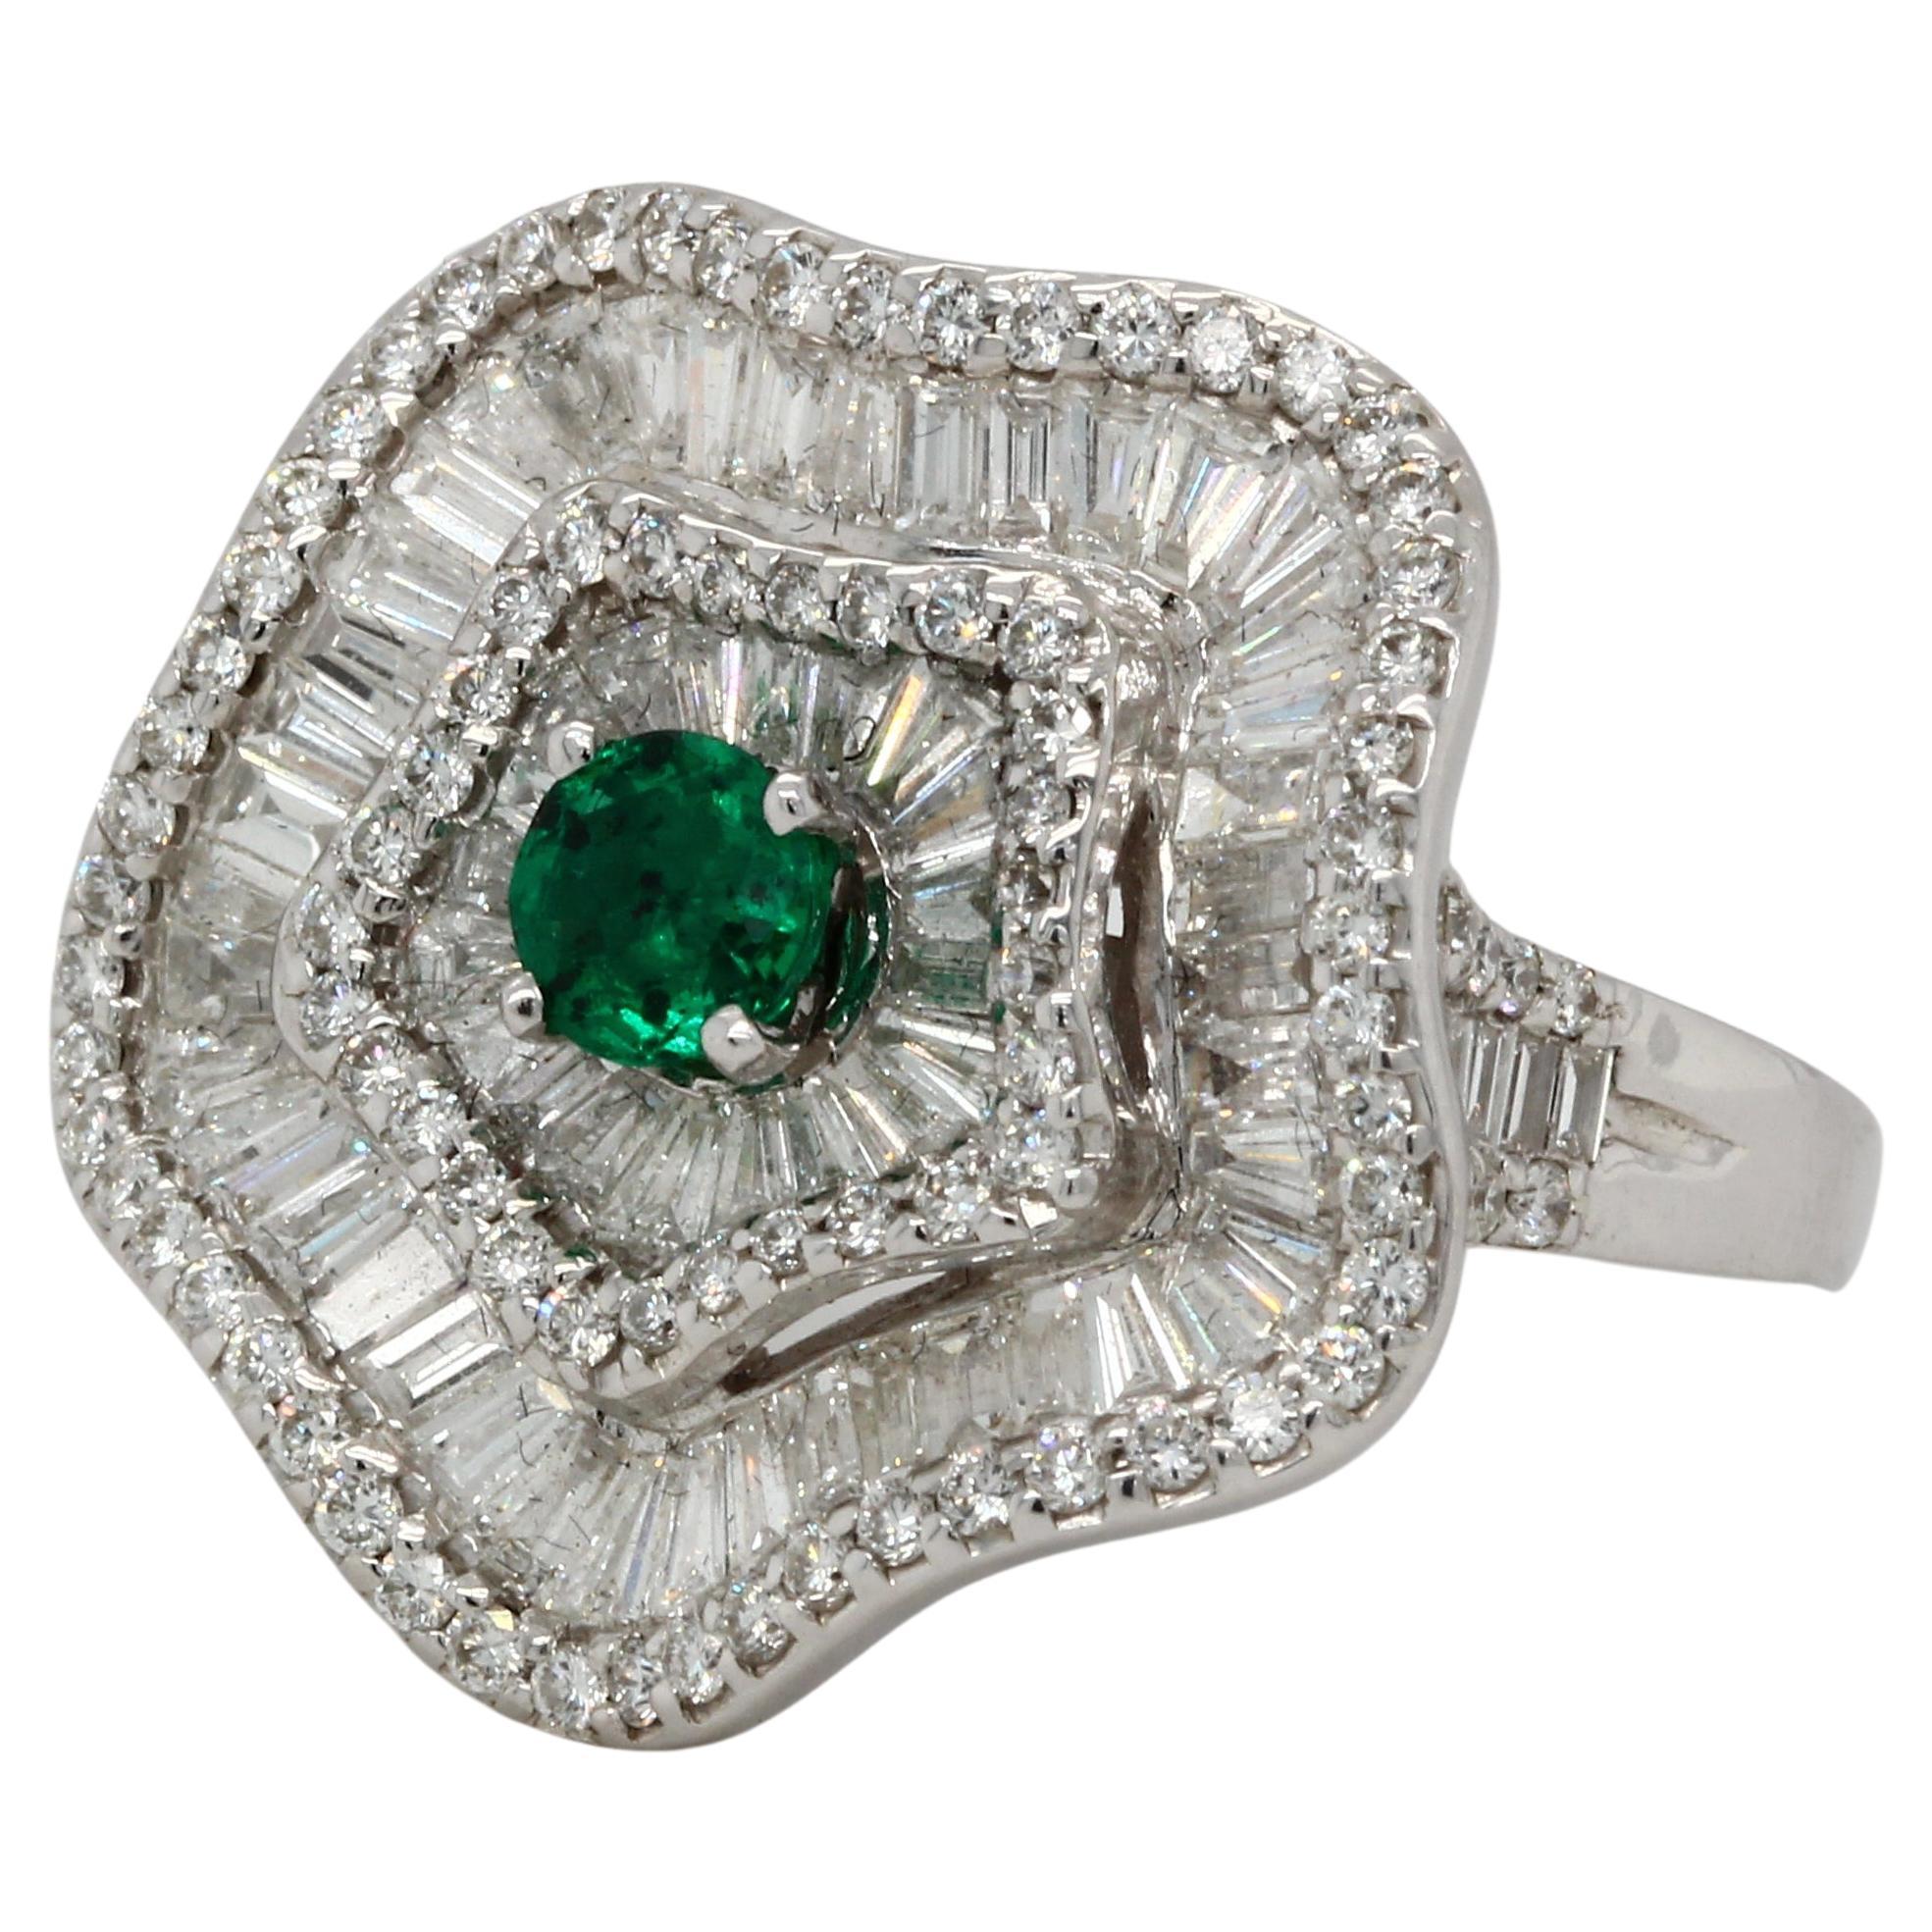 Ein brandneuer Smaragd- und Diamantring aus 18 Karat Gold. Dieser Ring hat einen runden Smaragd von 0,32 Karat, einen runden Diamanten von 1,29 Karat und einen runden Diamanten von 0,57 Karat. Dieser Ring ist aus 18 Karat Weißgold gefertigt und